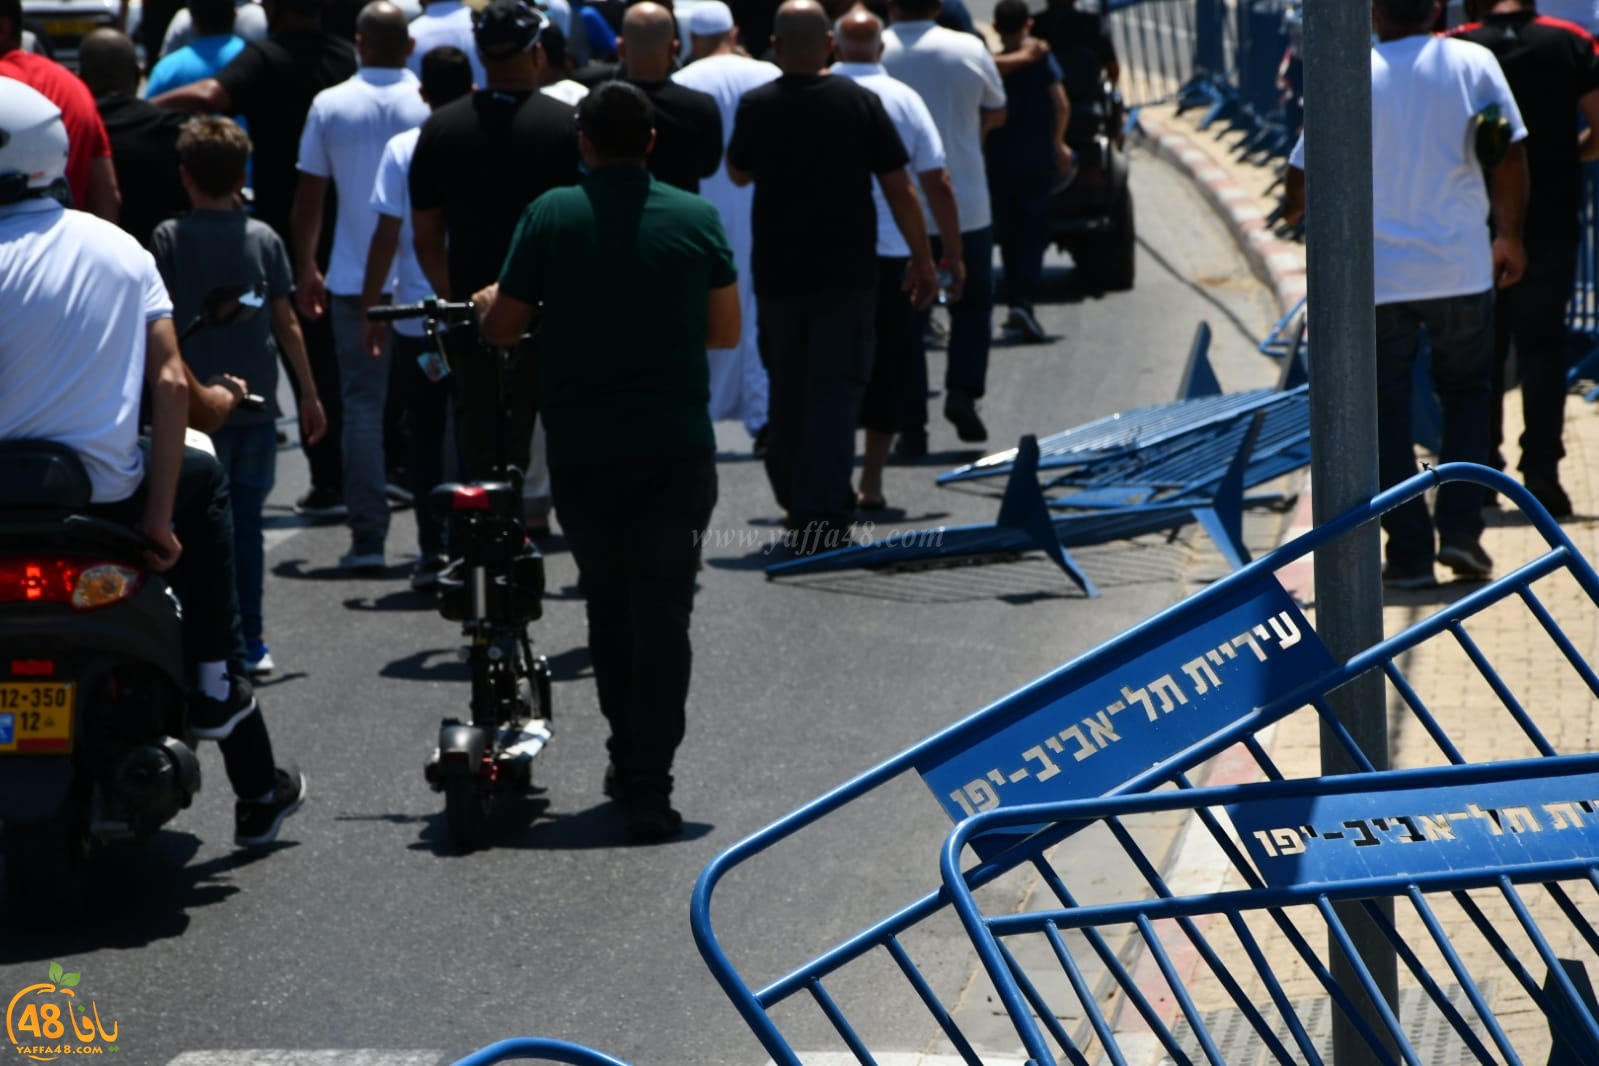 يافا: يهود قلقون بشأن التوتر الناجم عن الحراك الشعبي ضد نبش مقبرة الاسعاف